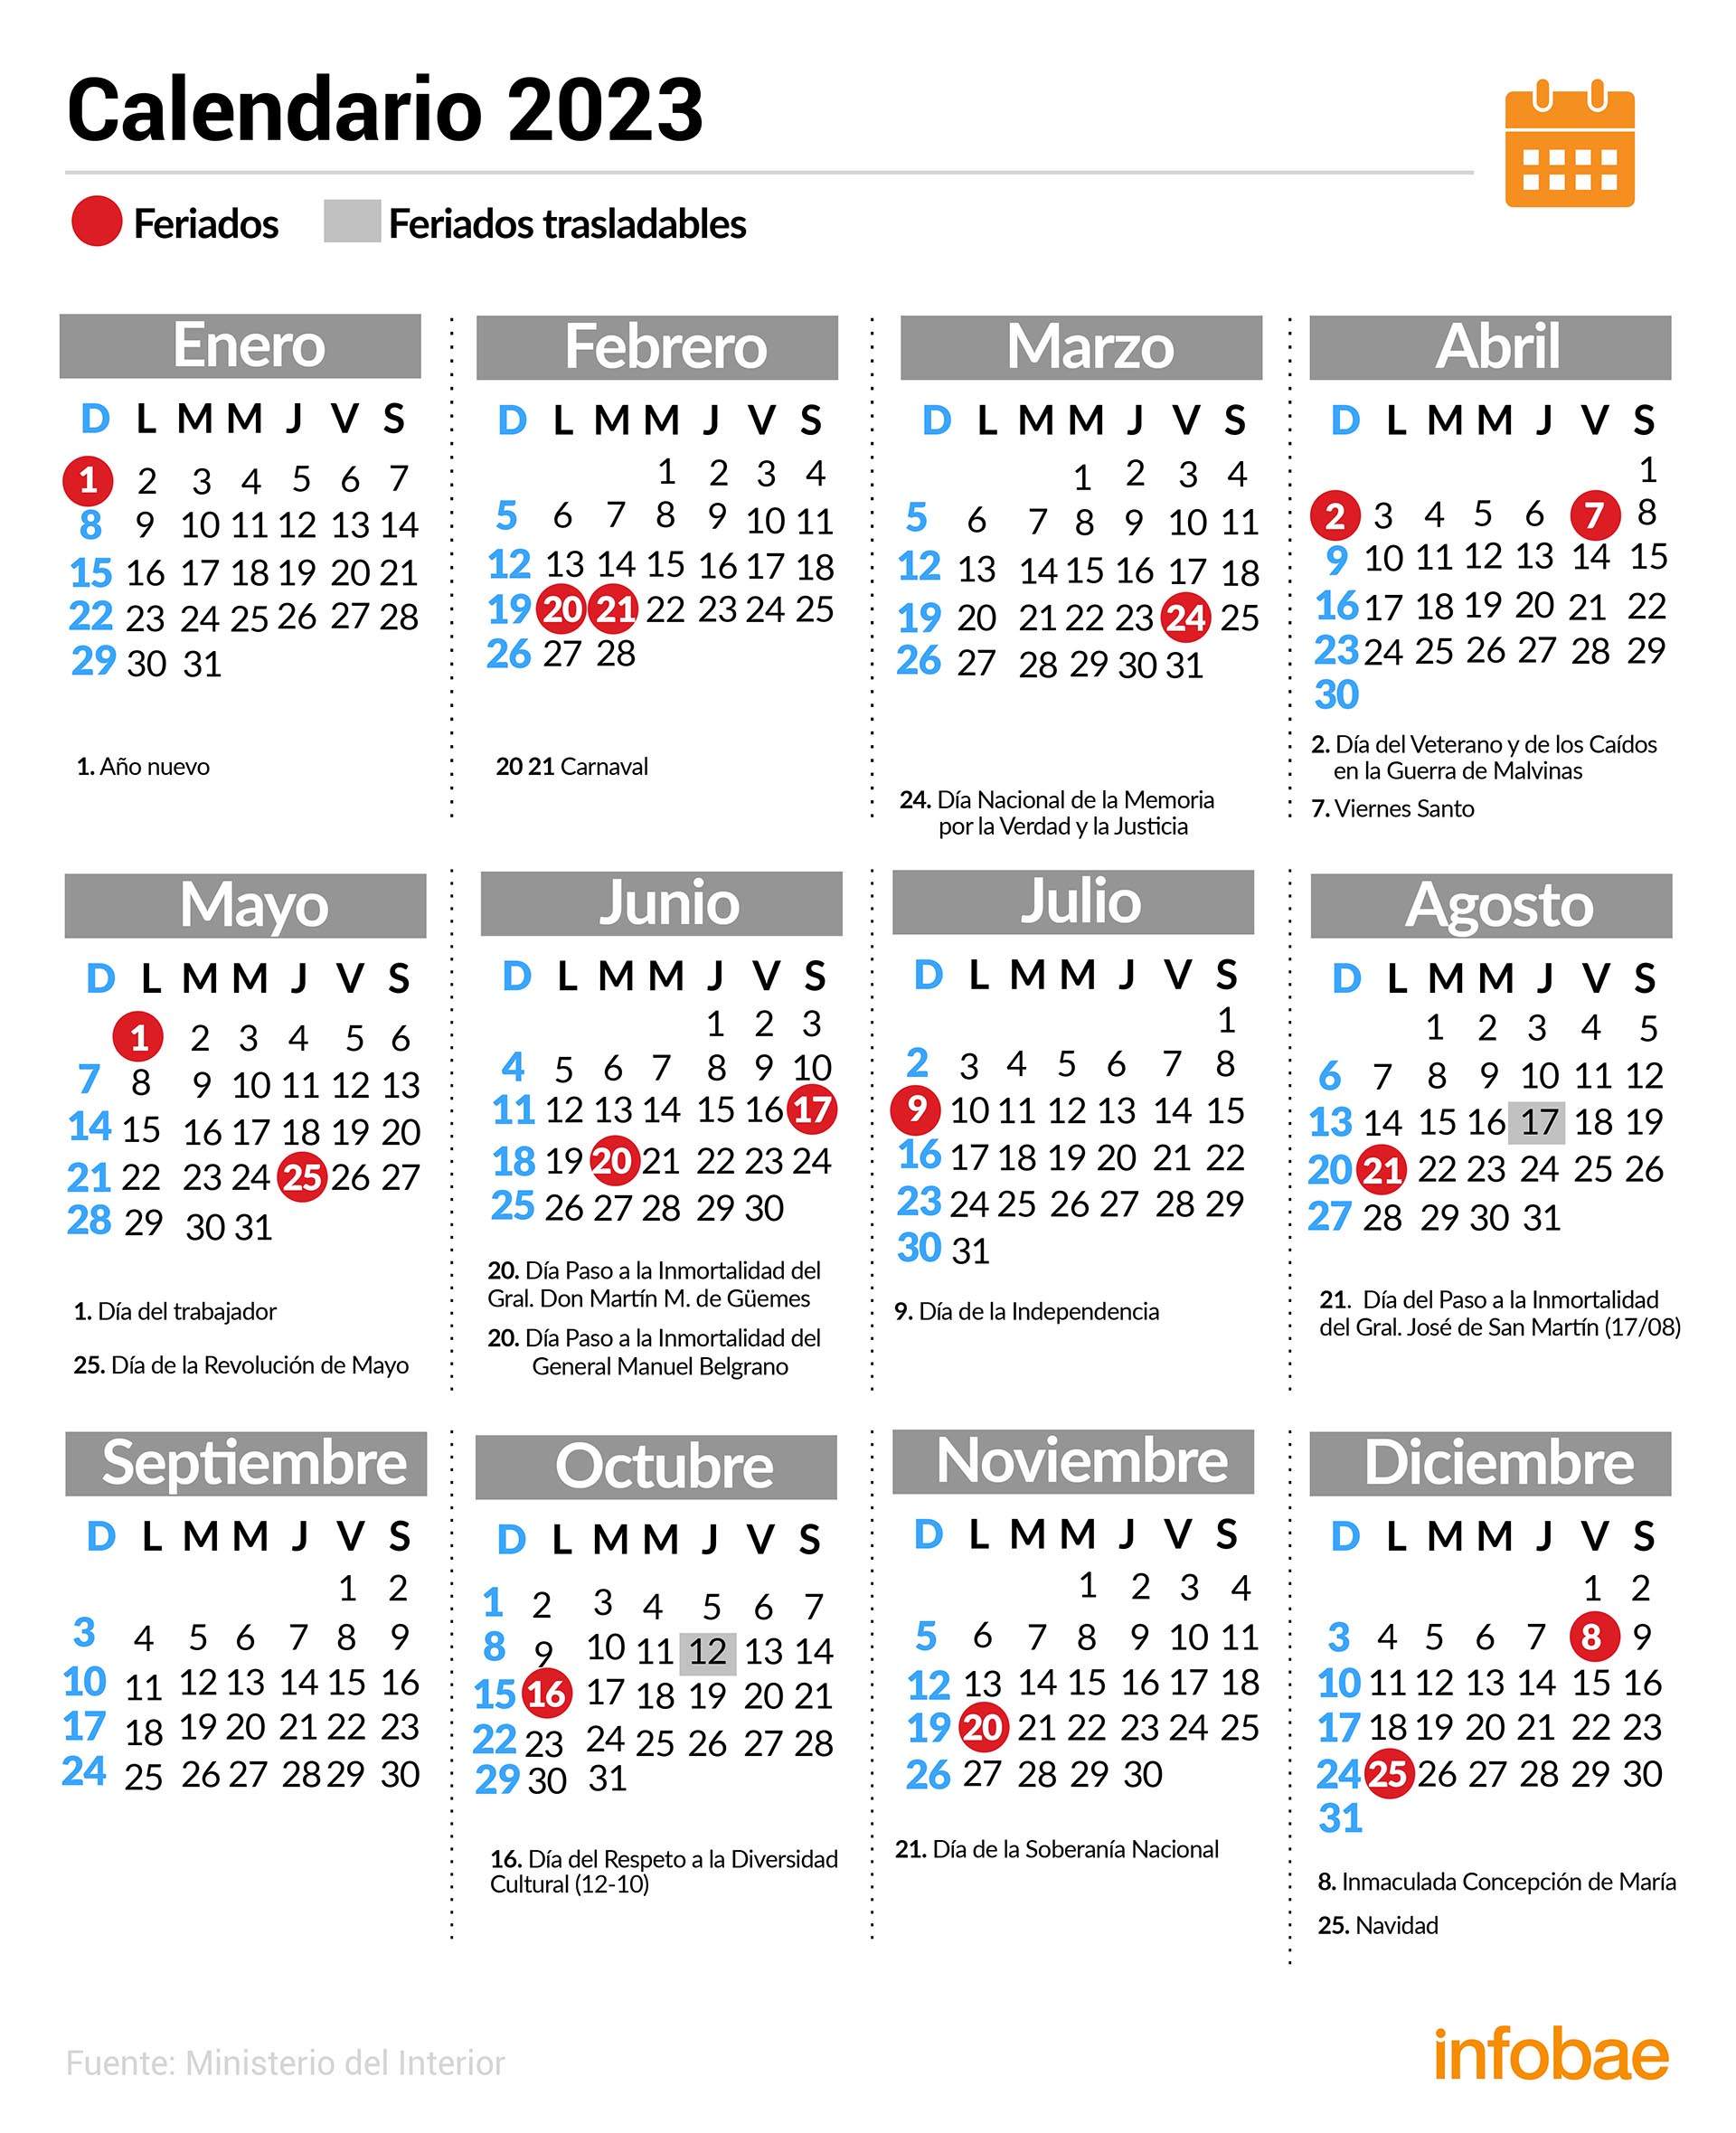 El calendario de feriados de 2023 completo.